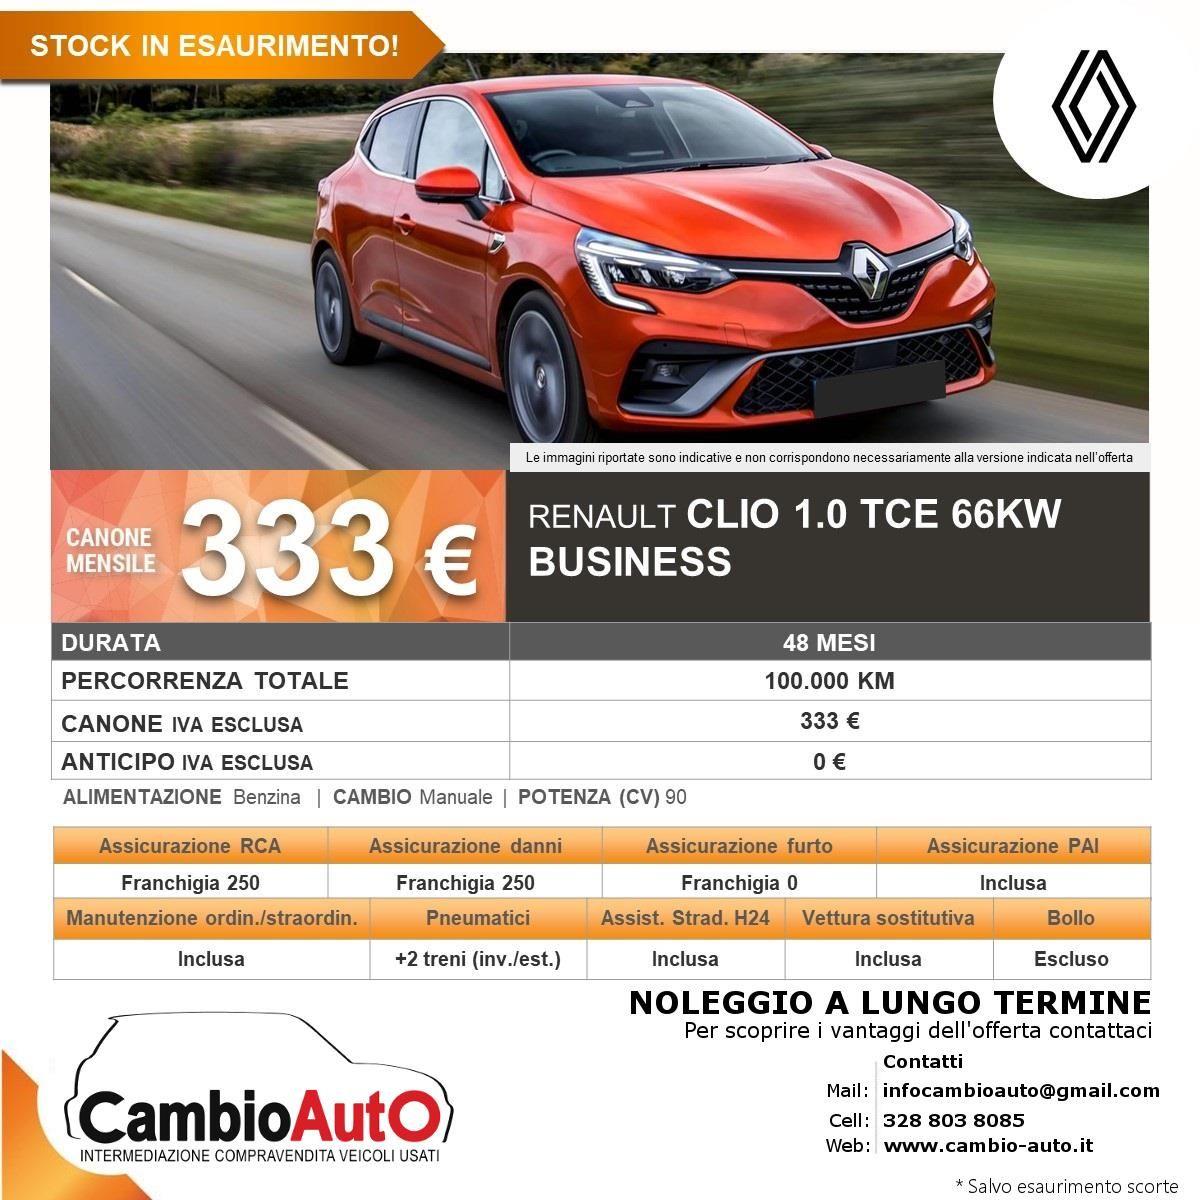 RENAULT Clio TCe 5p. Business 100.000 kM INCLUSI (4 ANNI) ANTICIPO 0€